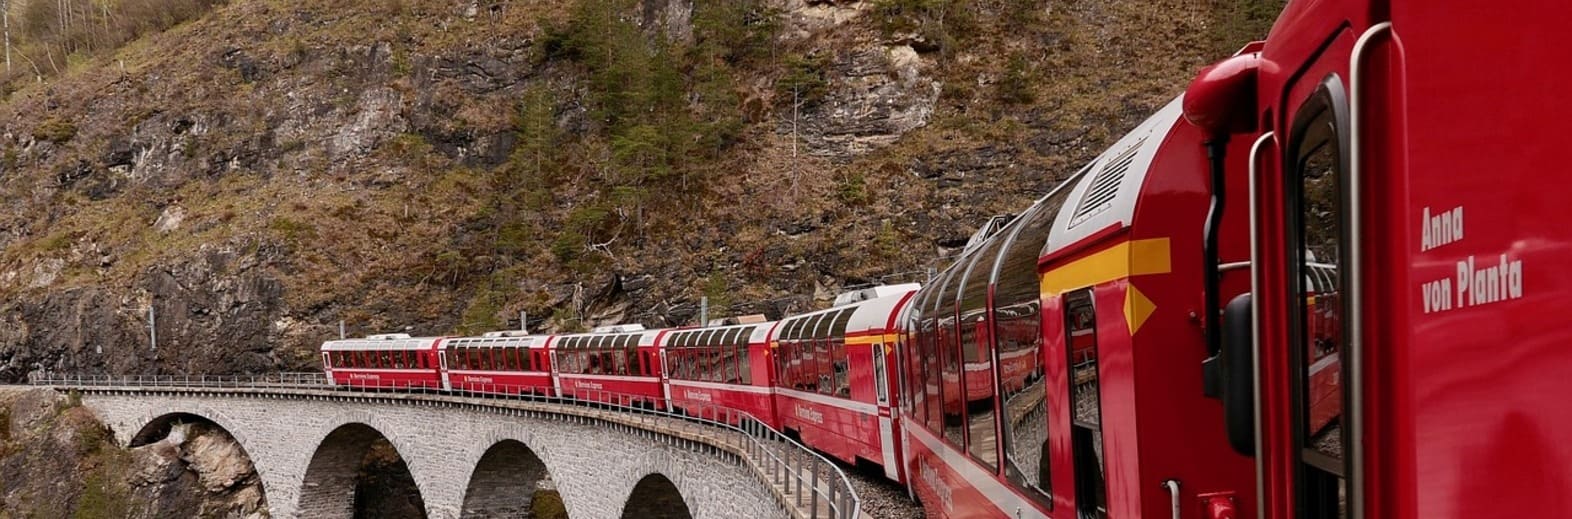 瑞士深度，四大名山、三大景觀火車、三大湖遊船、埃默生水庫三段景觀纜車15天全覽